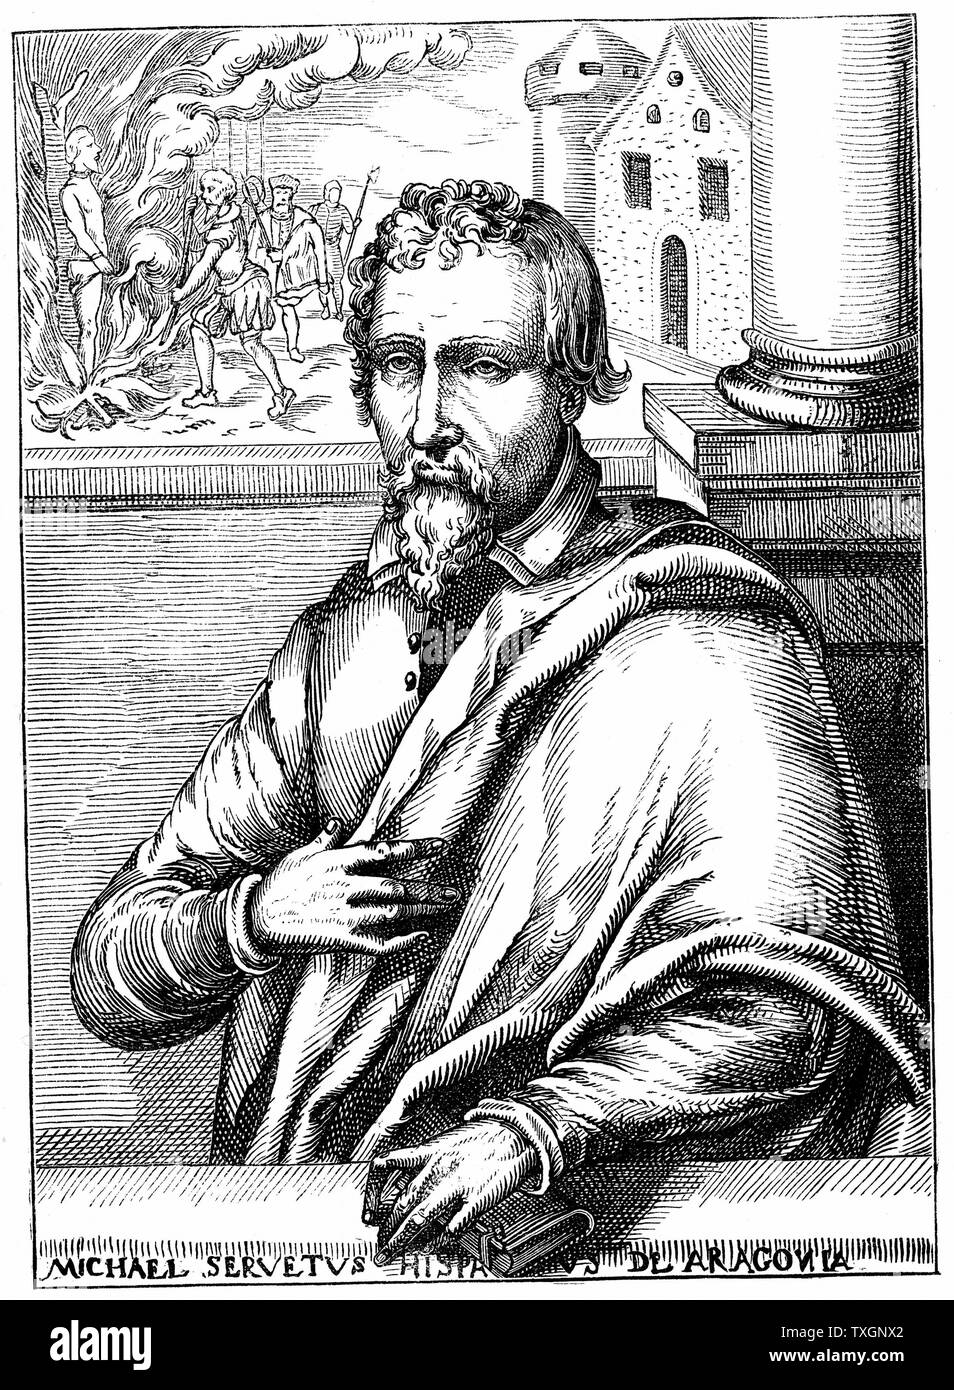 Michael Servetus (1511?1553), spanischer Arzt und Theologe. Portrait von Biographie veröffentlicht 1727. Entgangen katholische Inquisitor Allgemein in Lyon, wurde aber versucht, und der Ketzerei schuldig durch die Calvinisten und lebendig verbrannt in Genf gefunden. Holzschnitt Stockfoto